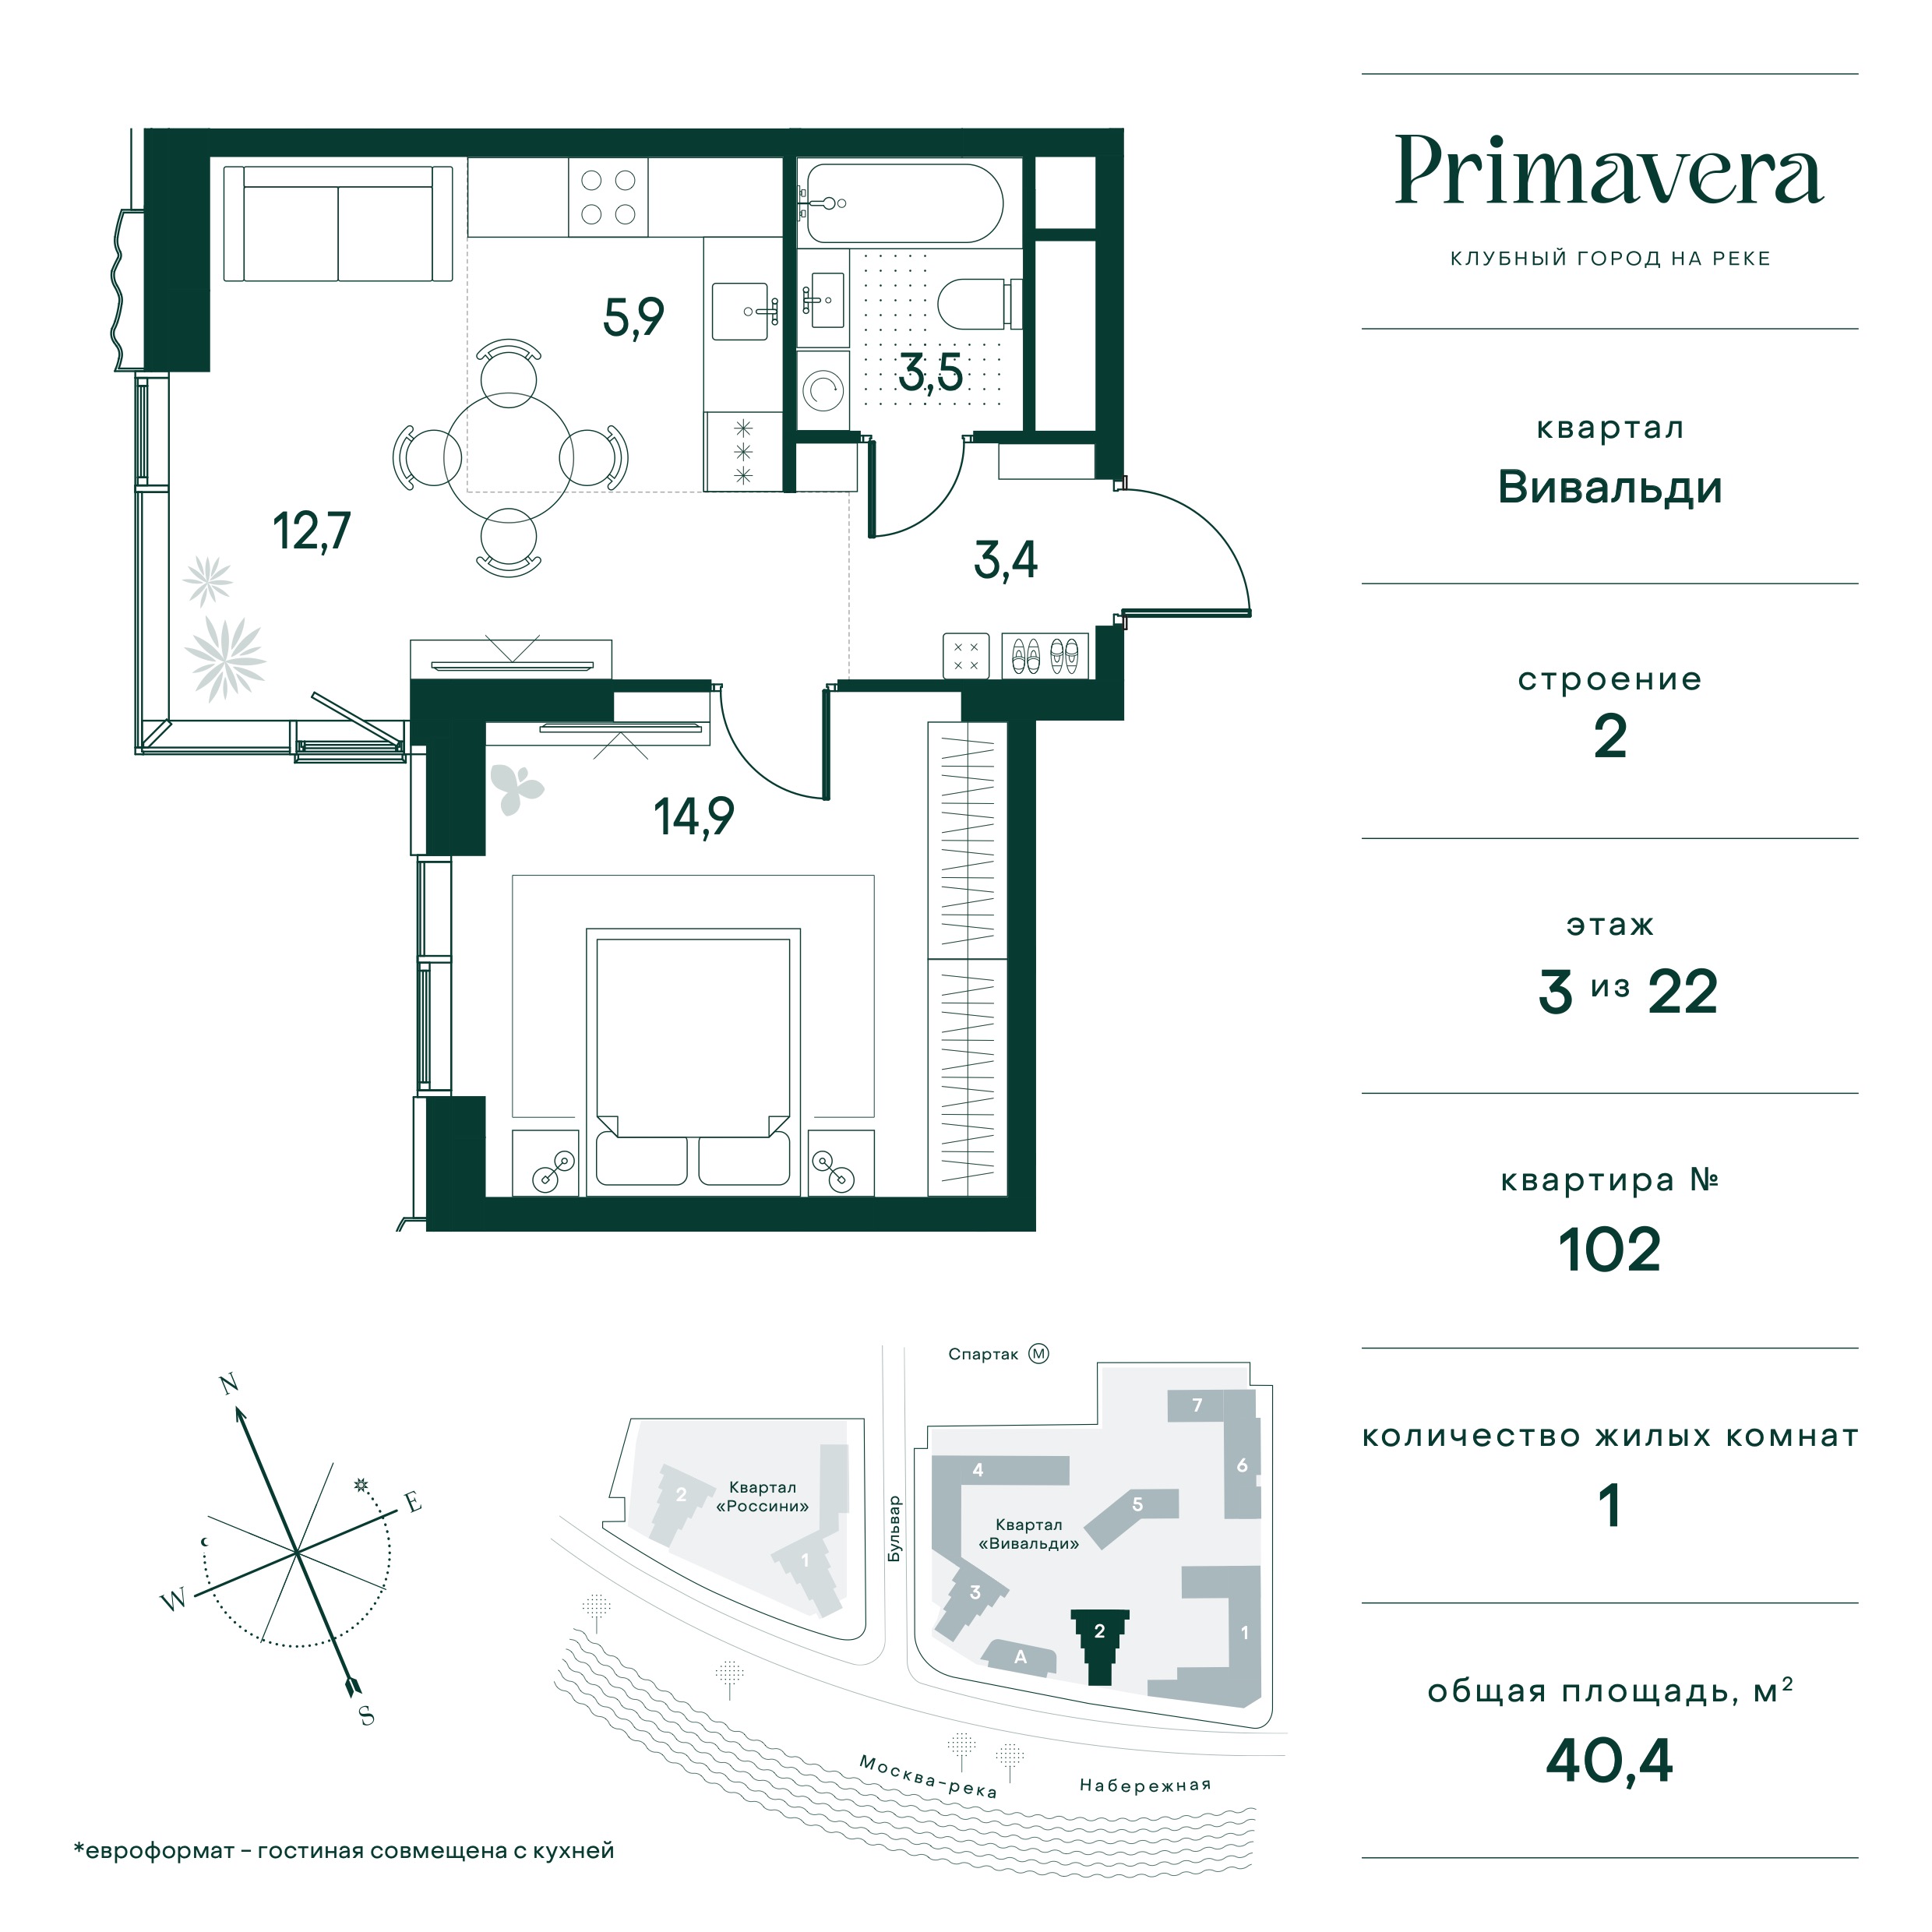 Планировка Квартира с 1 спальней 40.4 м2 в ЖК Primavera